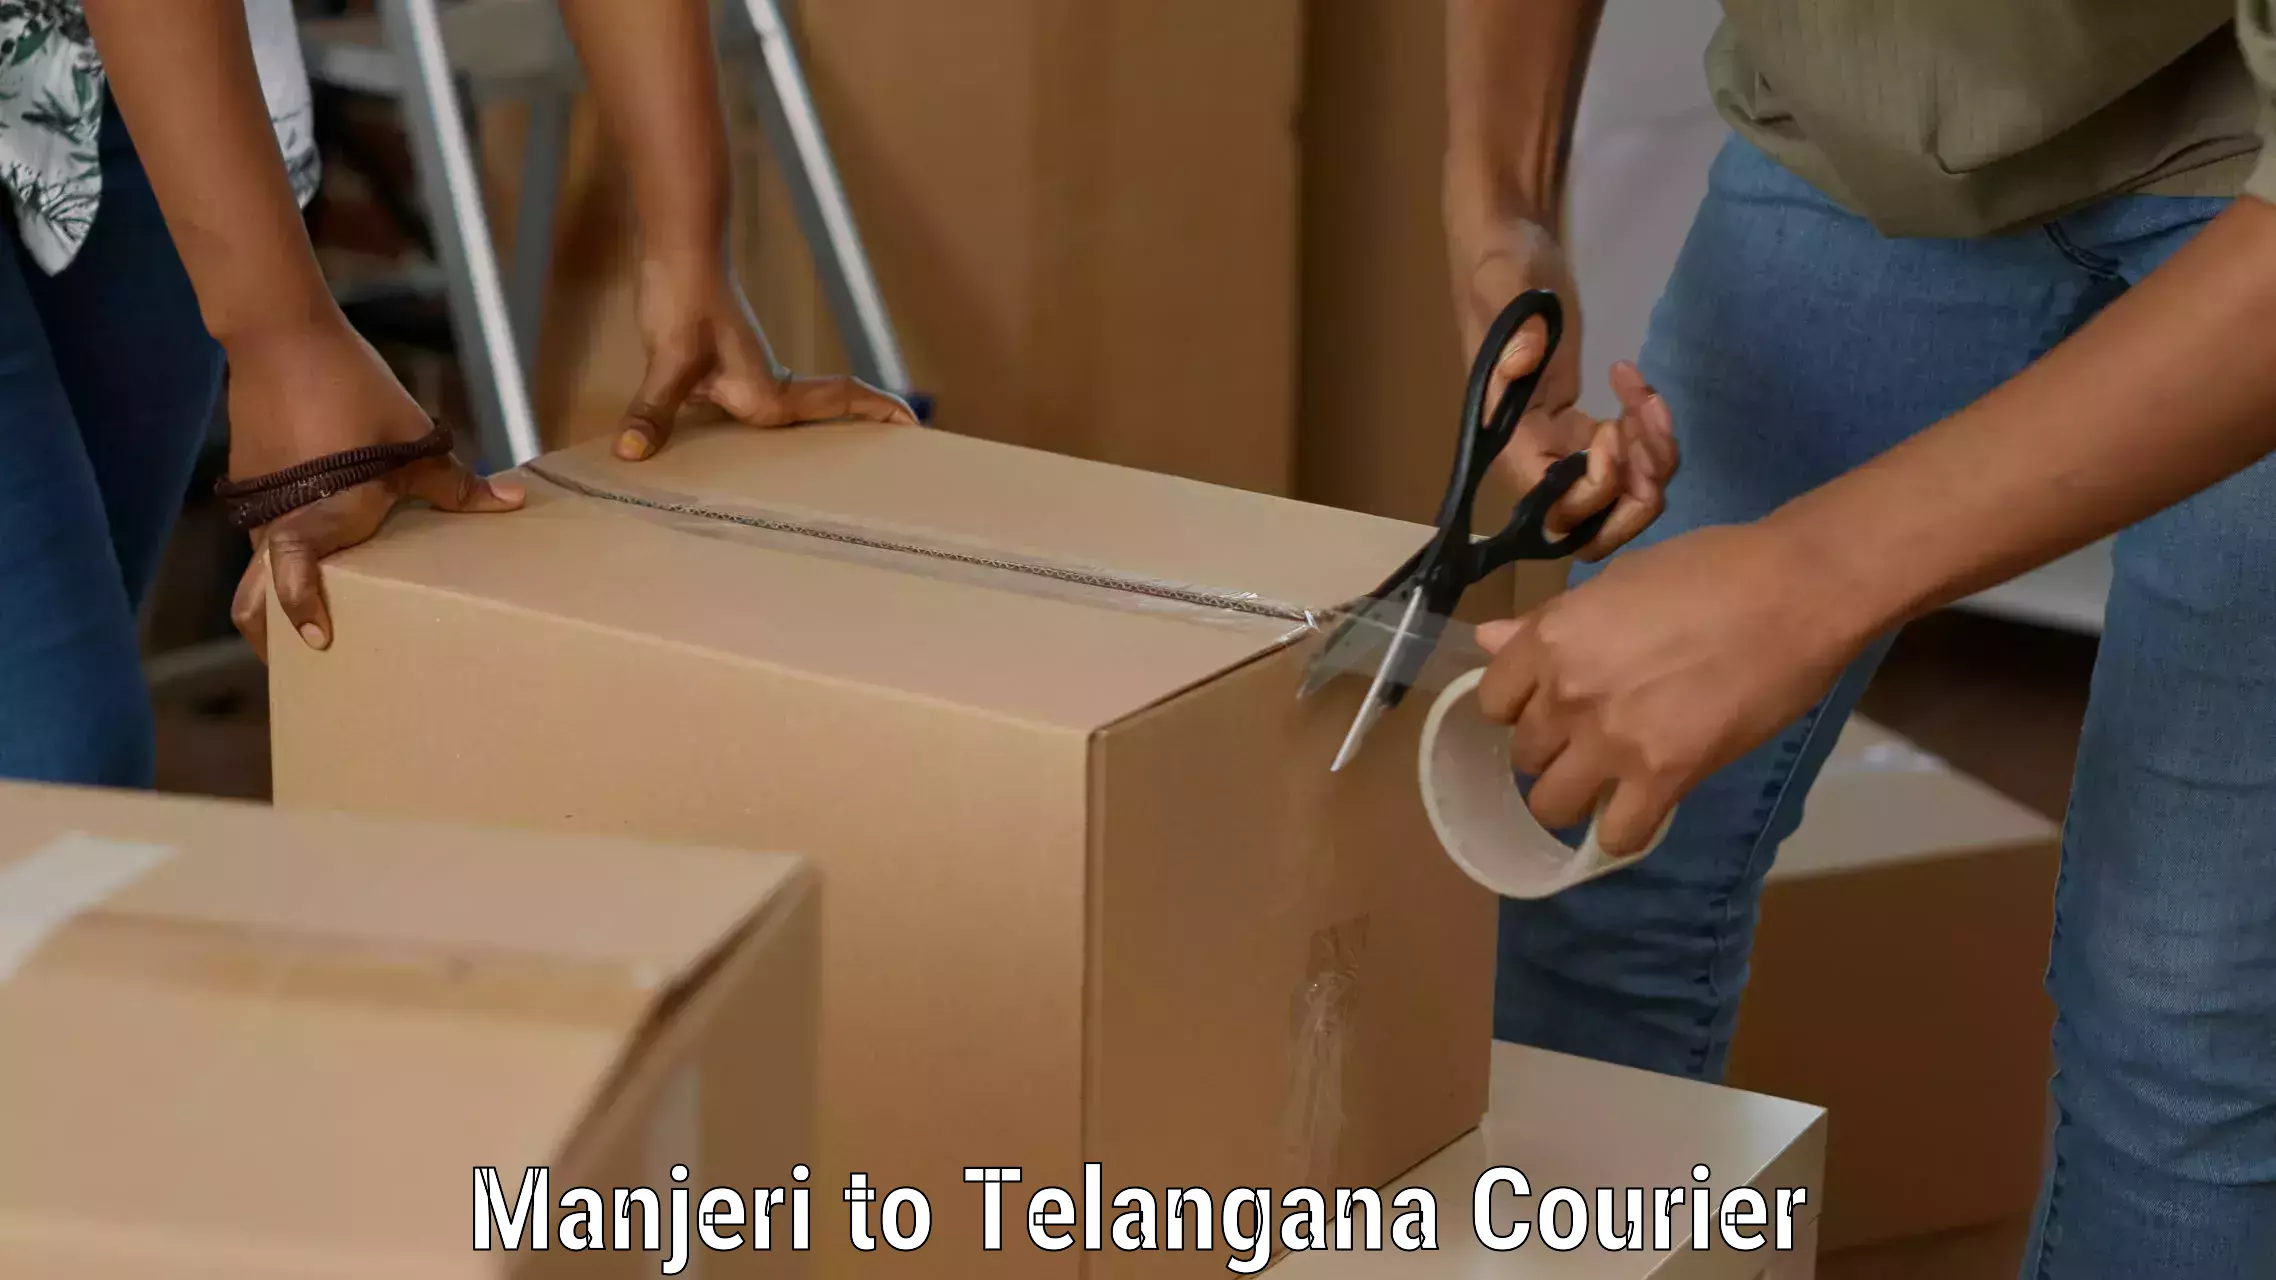 Personal parcel delivery Manjeri to Kothagudem